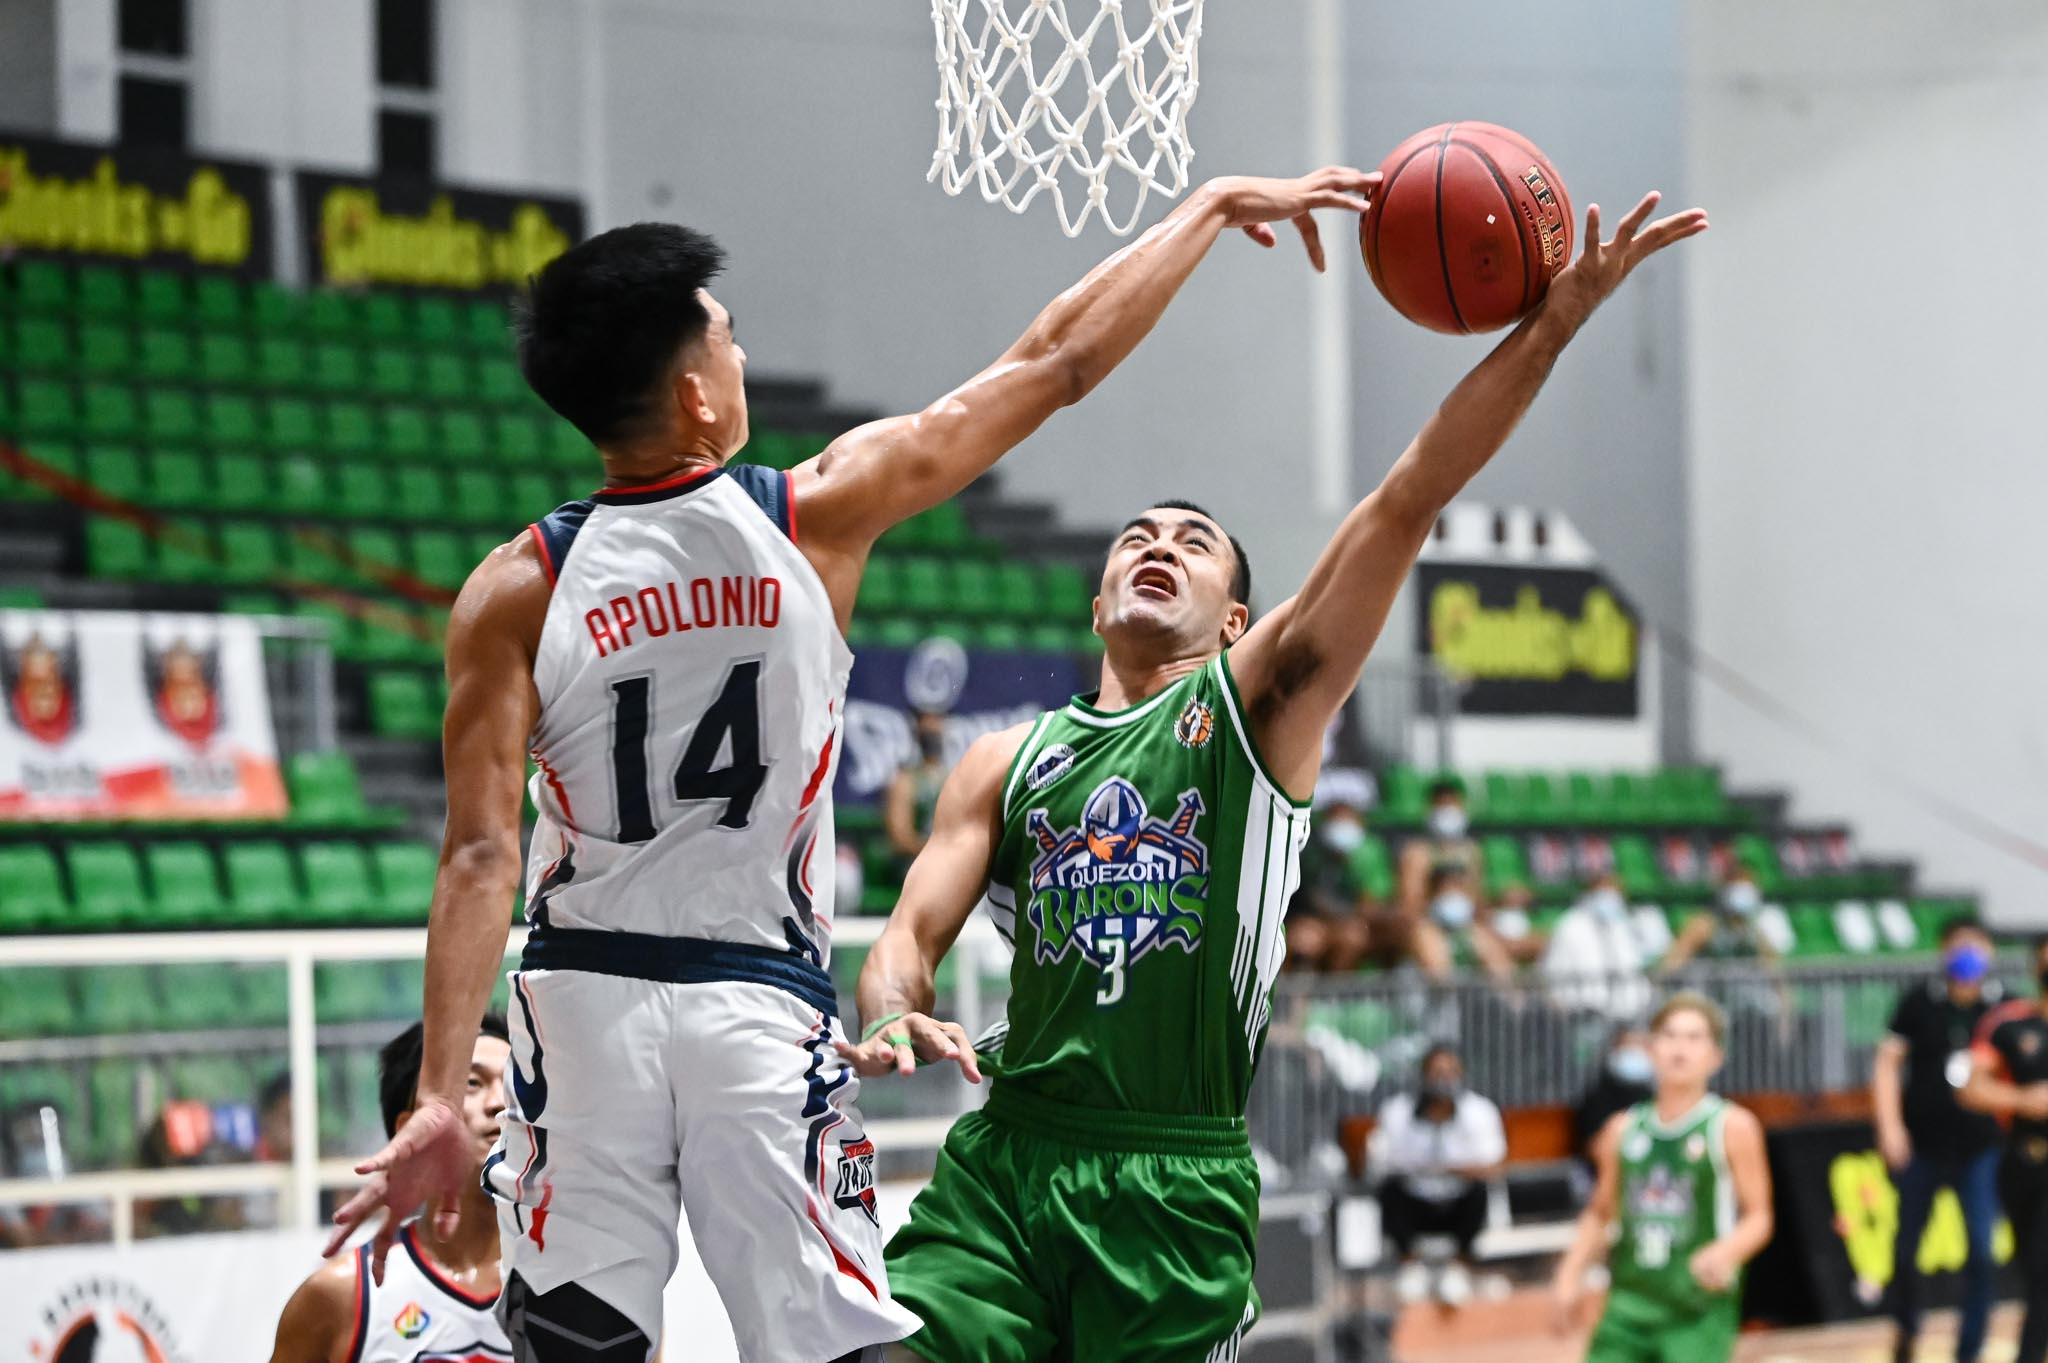 2021-Chooks-NBL-La-Union-vs-Quezon-Jason-Apolonio-block-La-Union NBL: Maynes powers La Union to emotional come-from-behind win vs Quezon Basketball NBL News  - philippine sports news